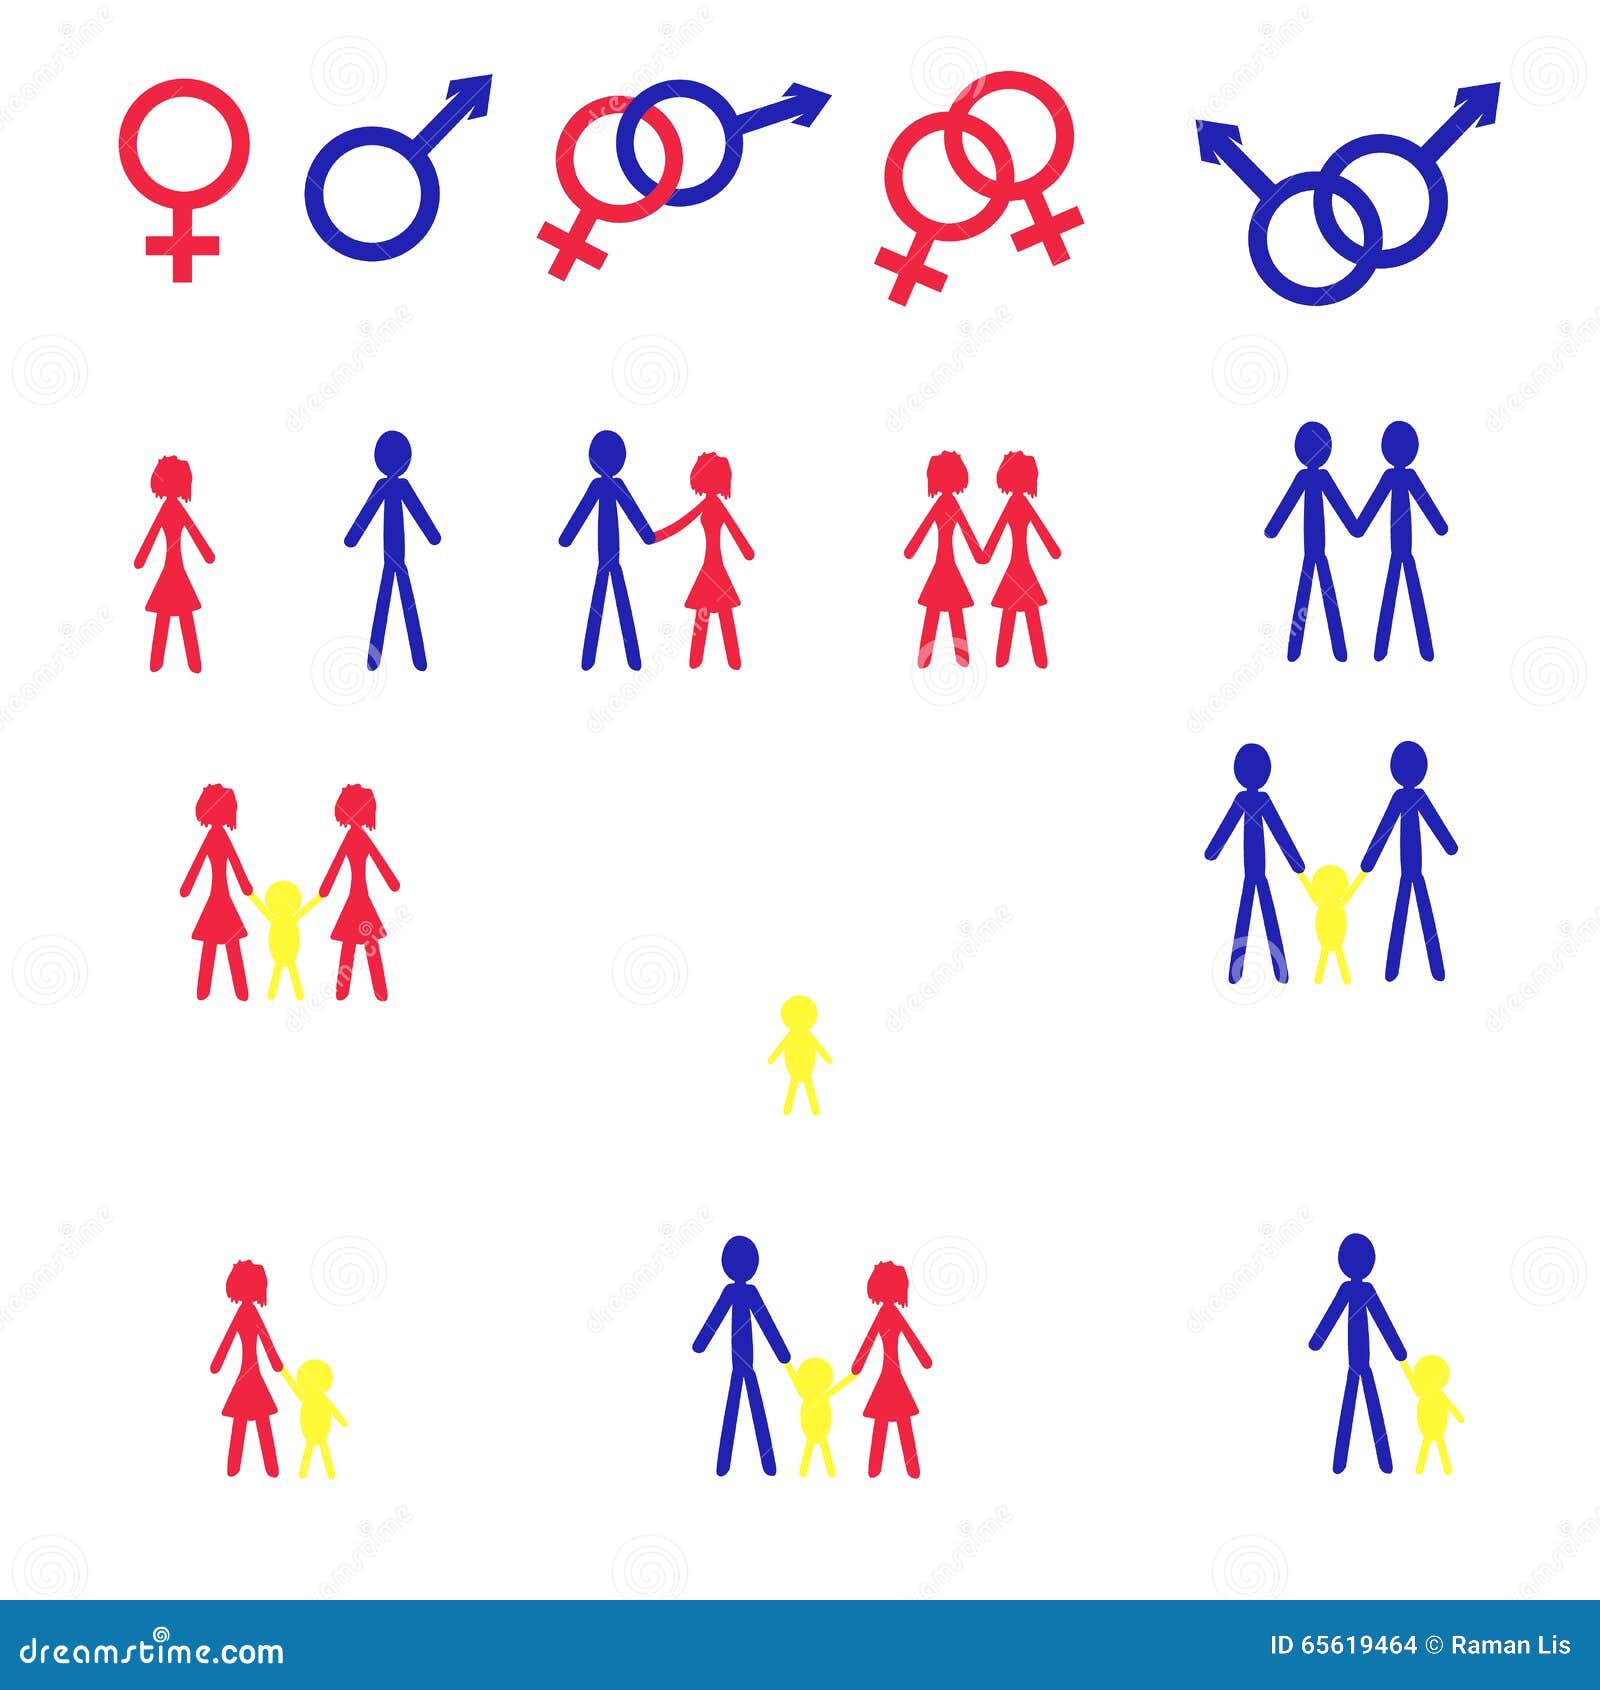 Sex Symbols Stock Vector Illustration Of Gender Heterosexual 65619464